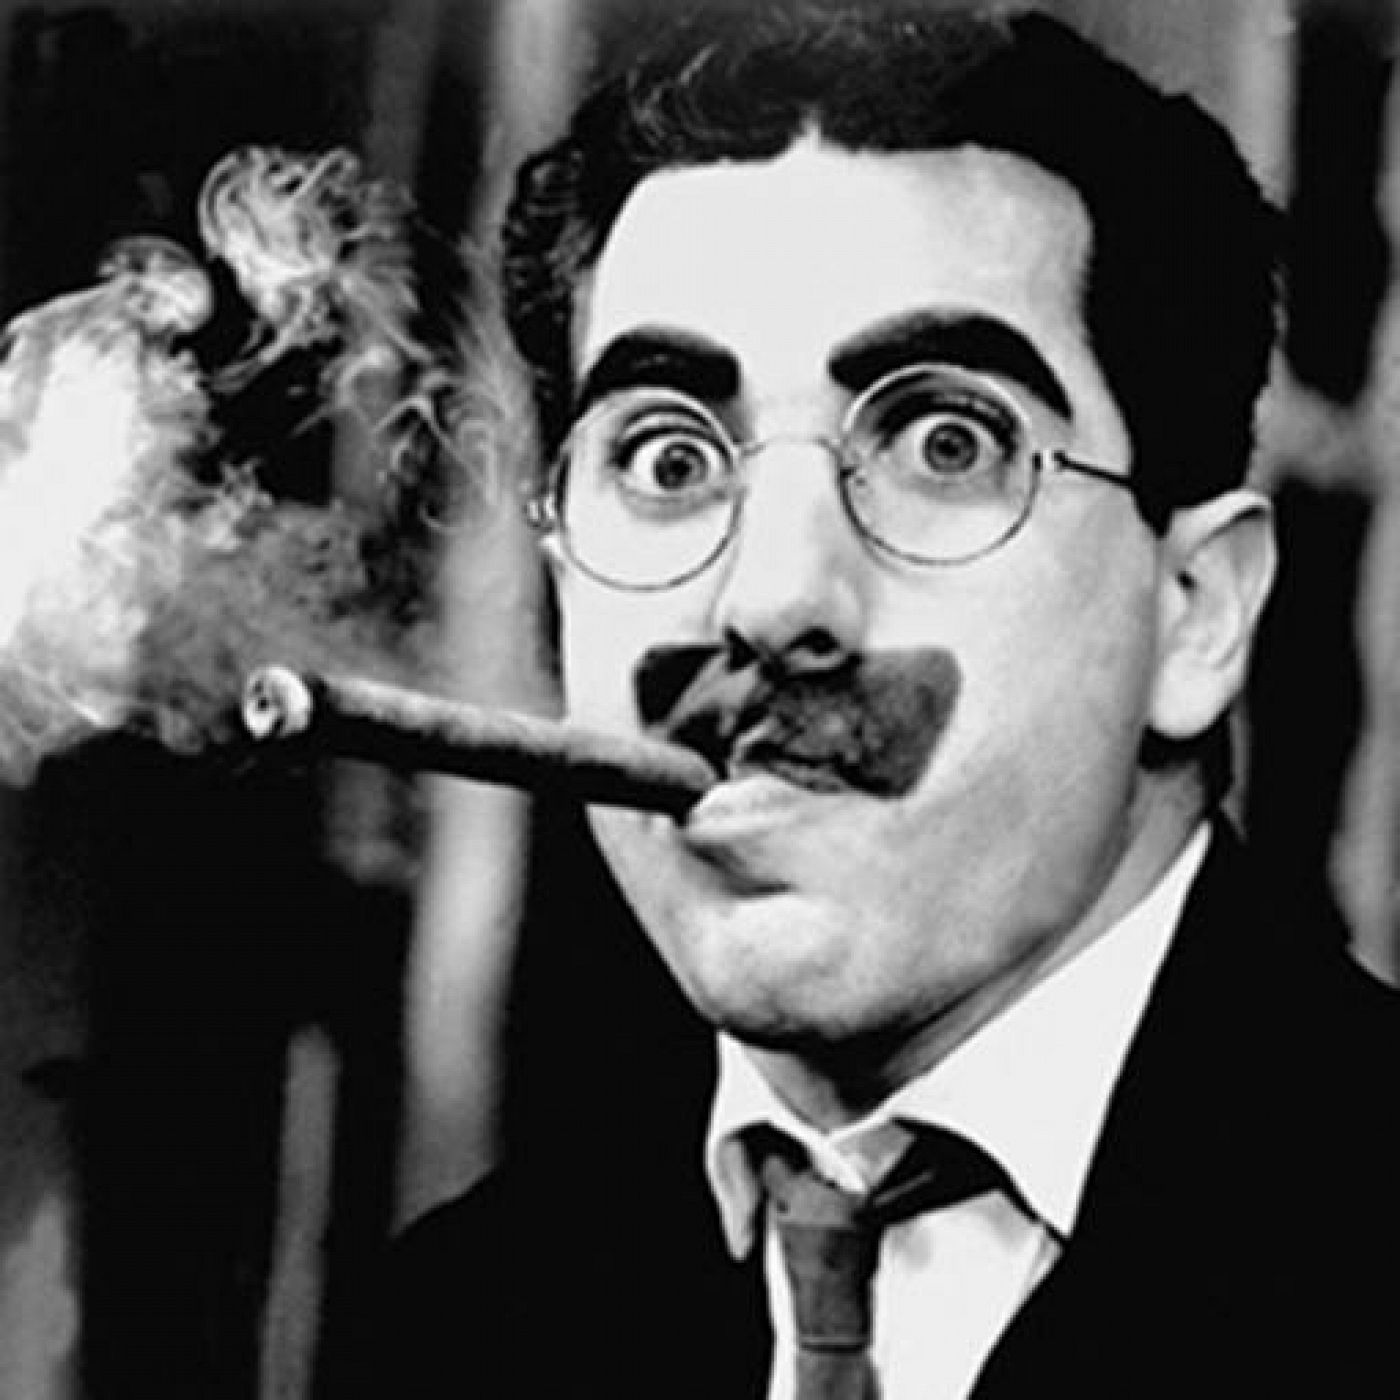  Se cumplen 35 años de la muerte del mítico Groucho Marx